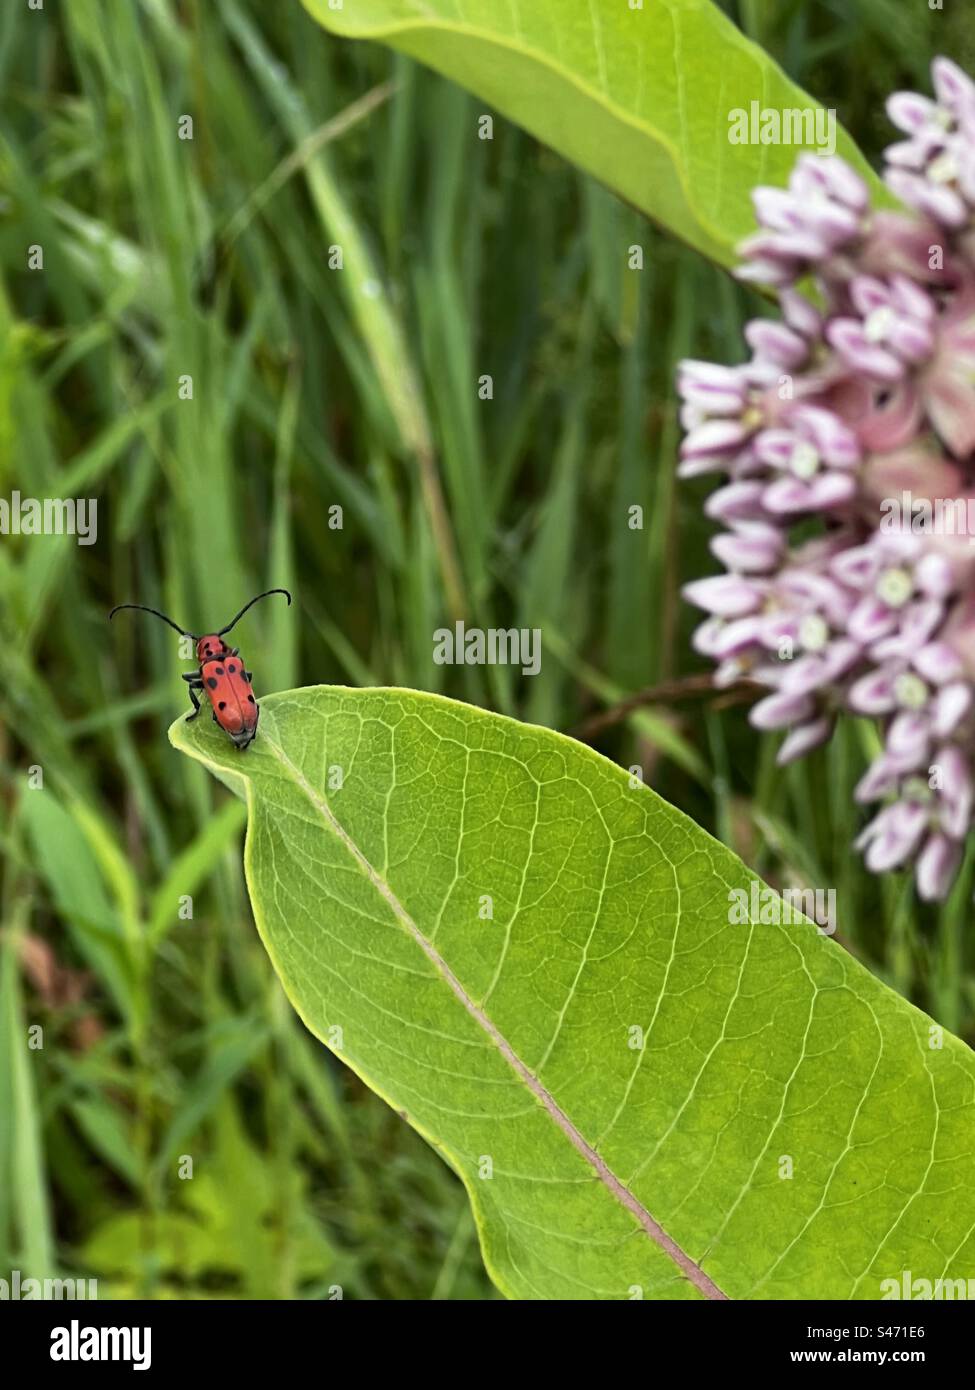 Red milkweed beetle surveying its world Stock Photo